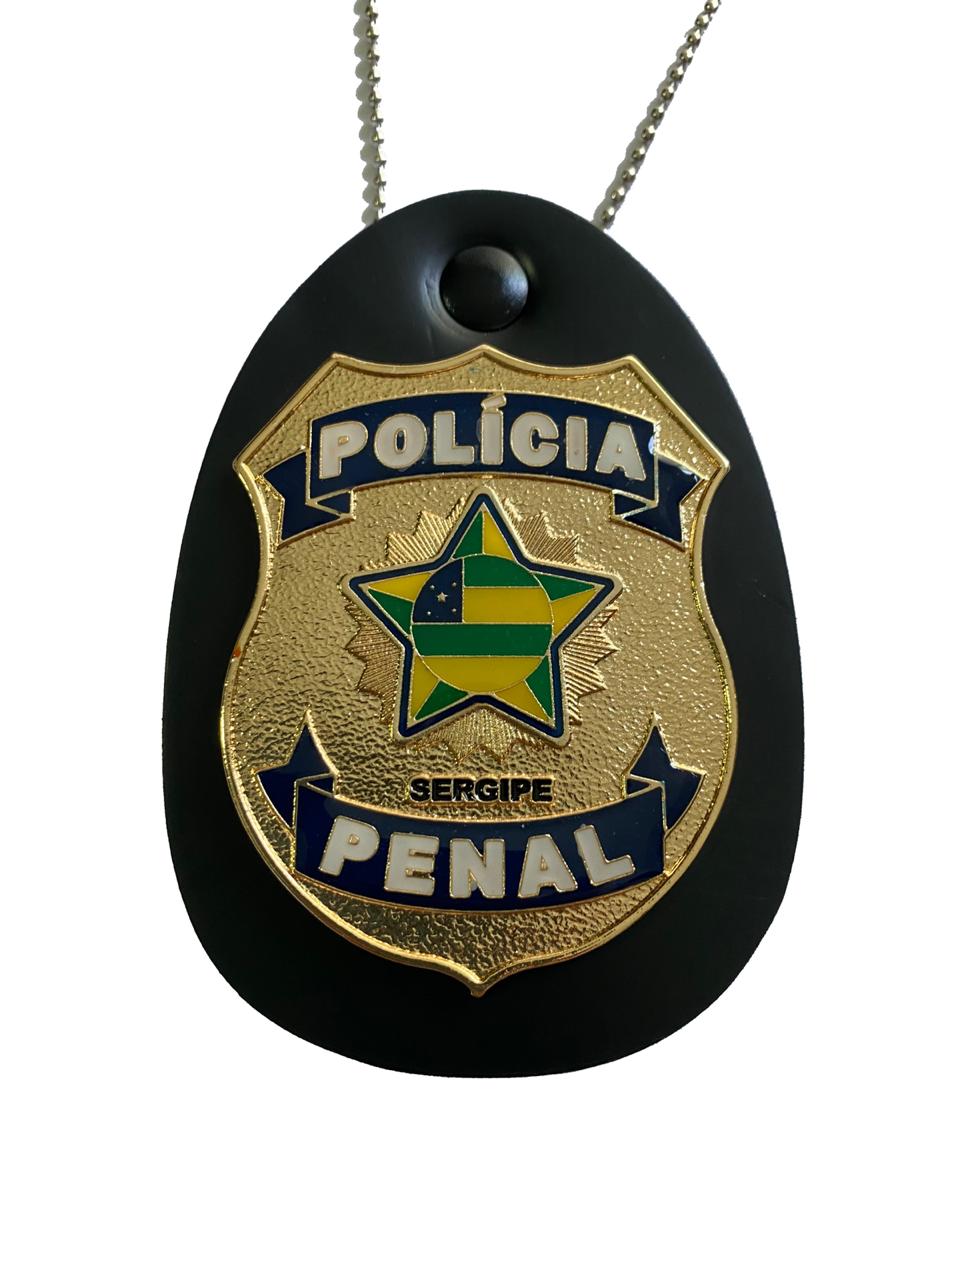 POLÍCIA PENAL SERGIPE - PPSE